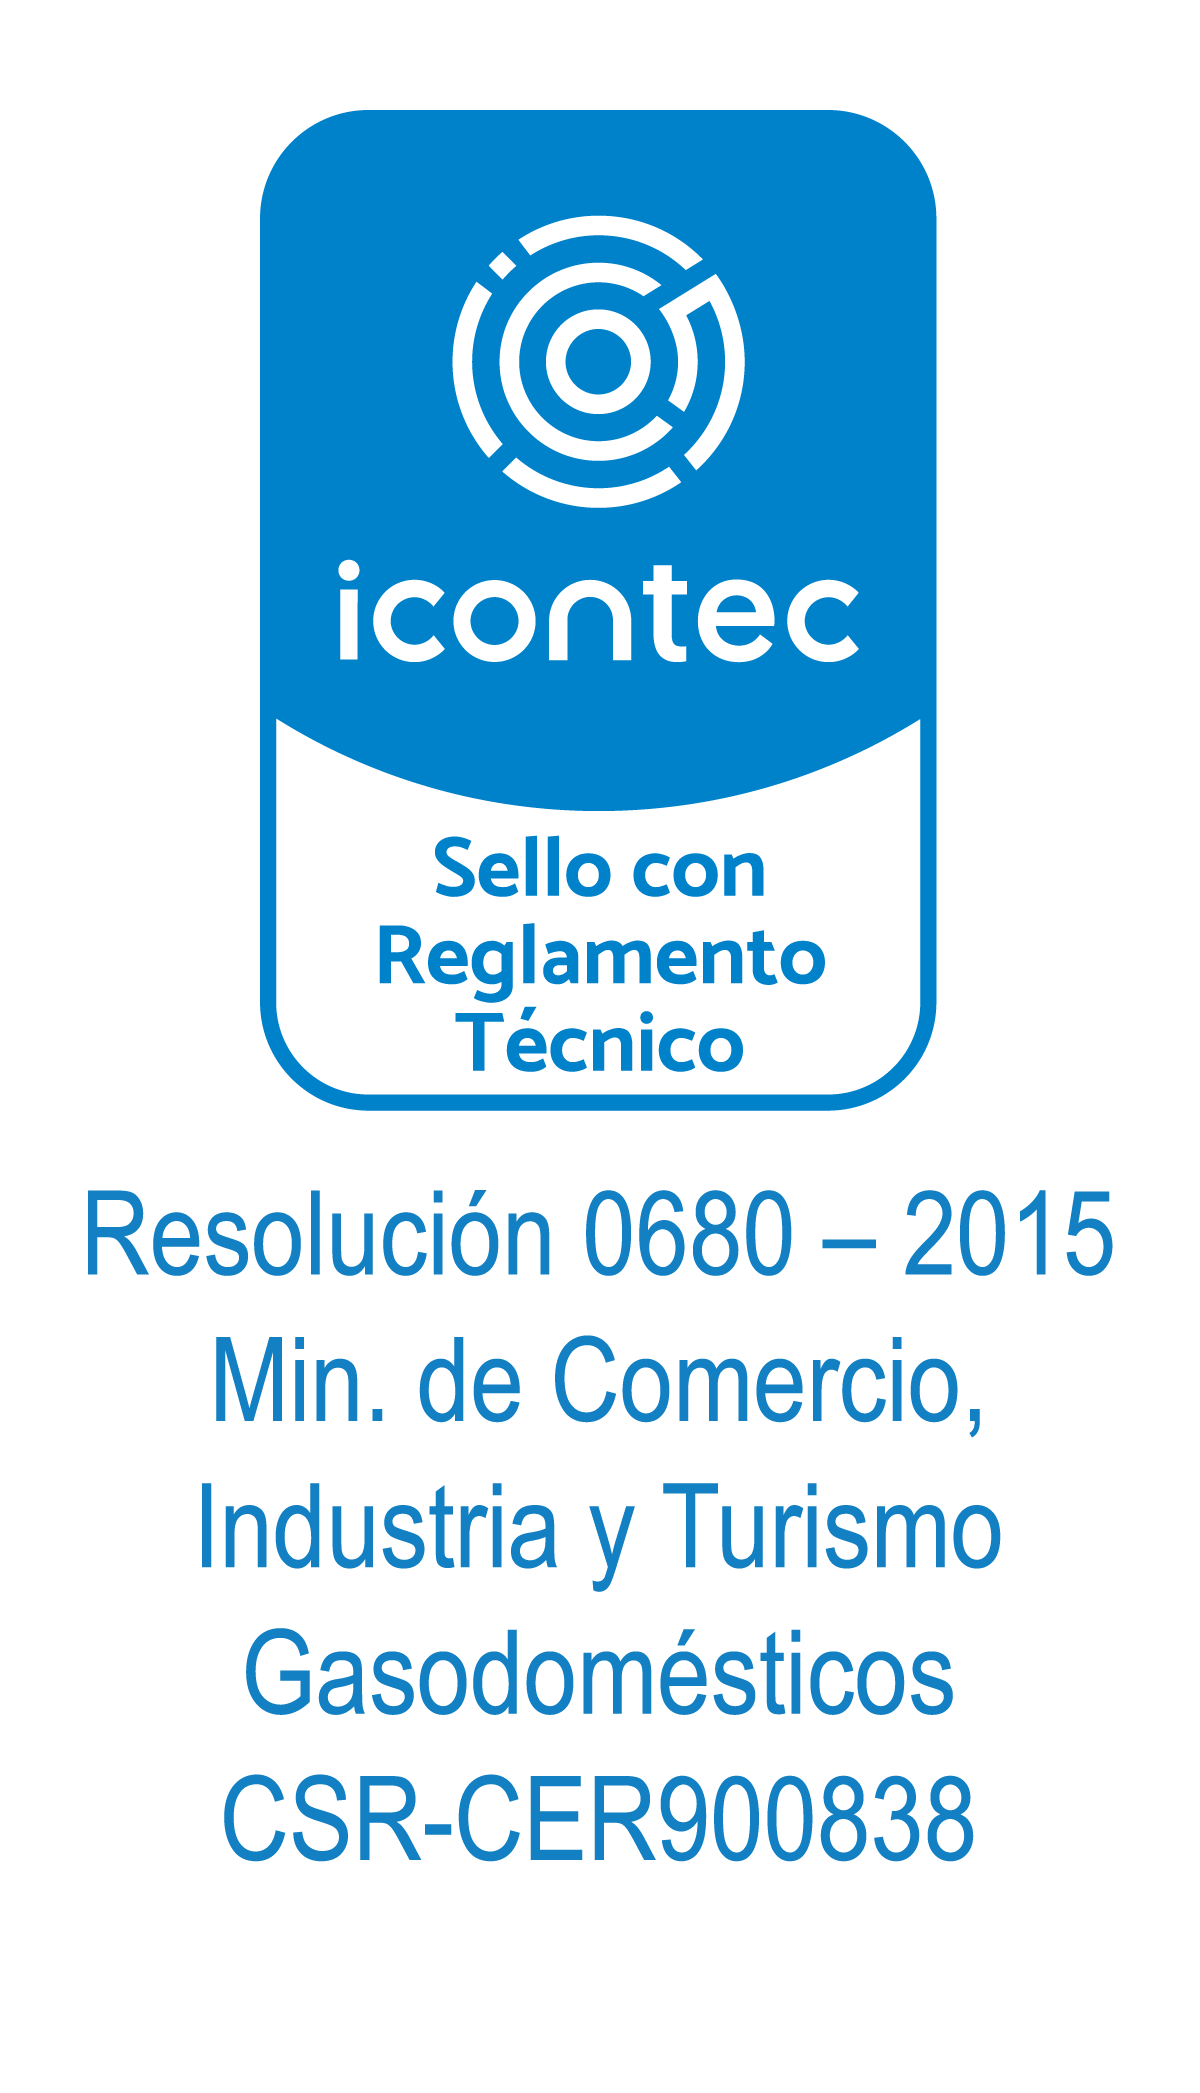 Icontec CSR -CER900838